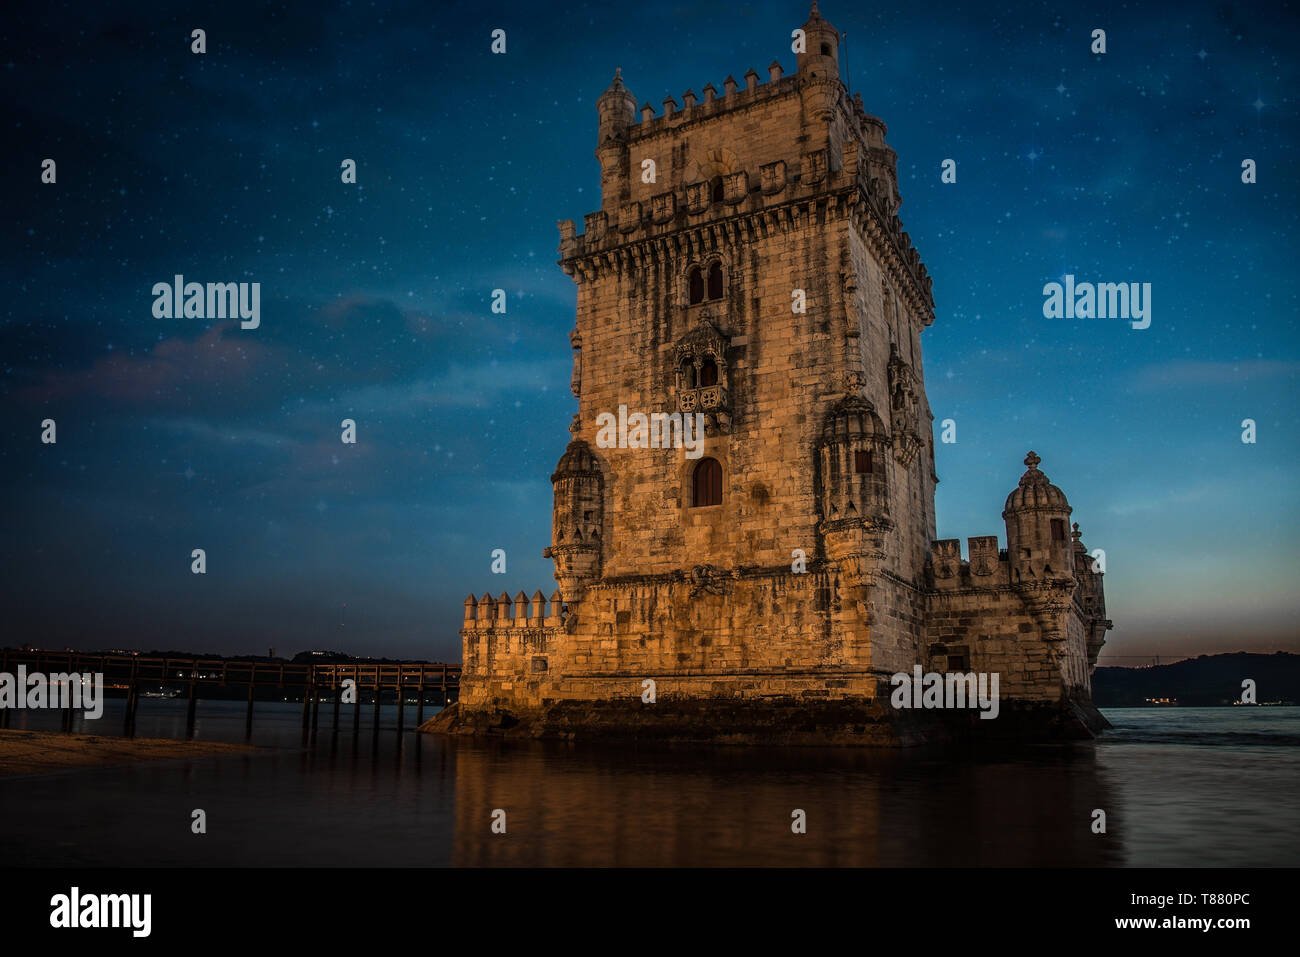 Torre de Belém portugal Stock Photo